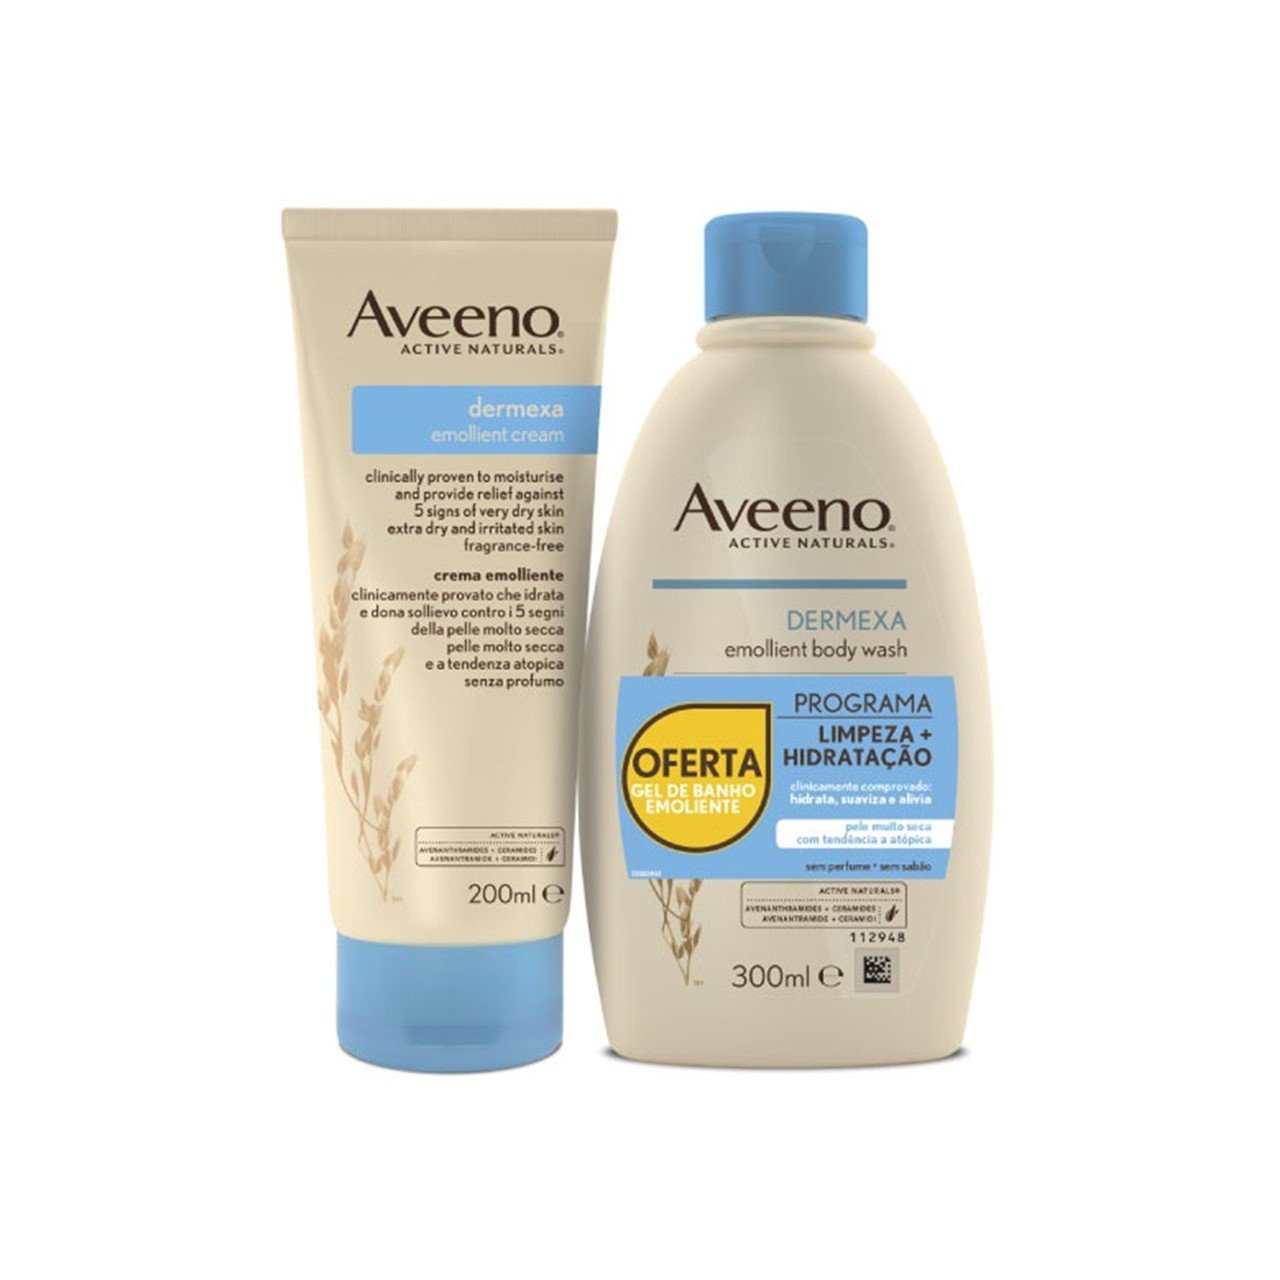 Aveeno Dermexa Emollient Cream 200ml + Emollient Body Wash 300ml (10.14+6.76fl oz)